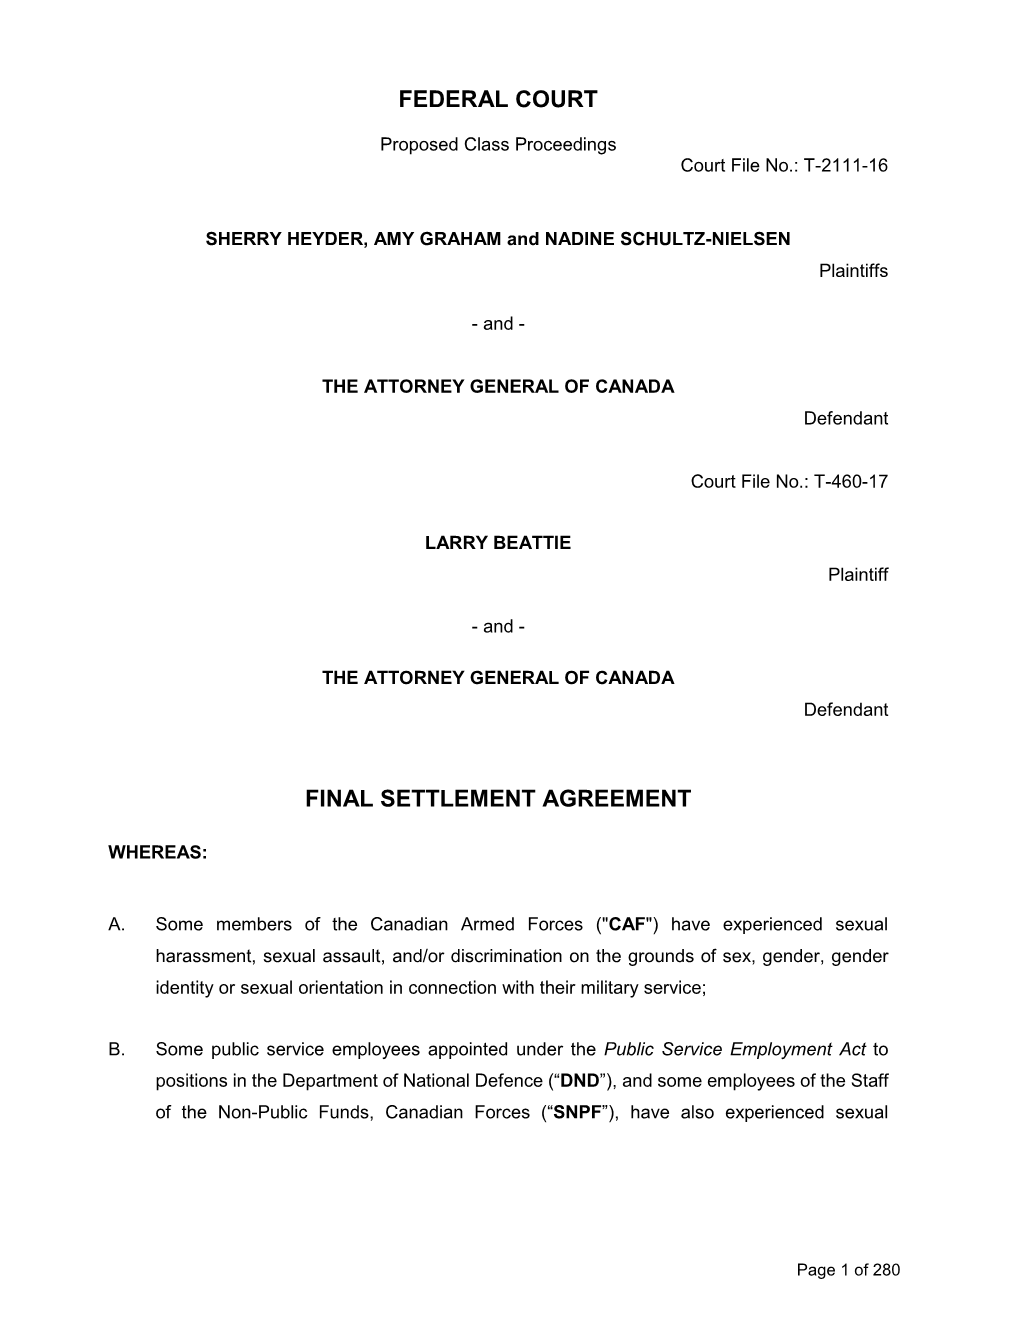 Federal Court Final Settlement Agreement